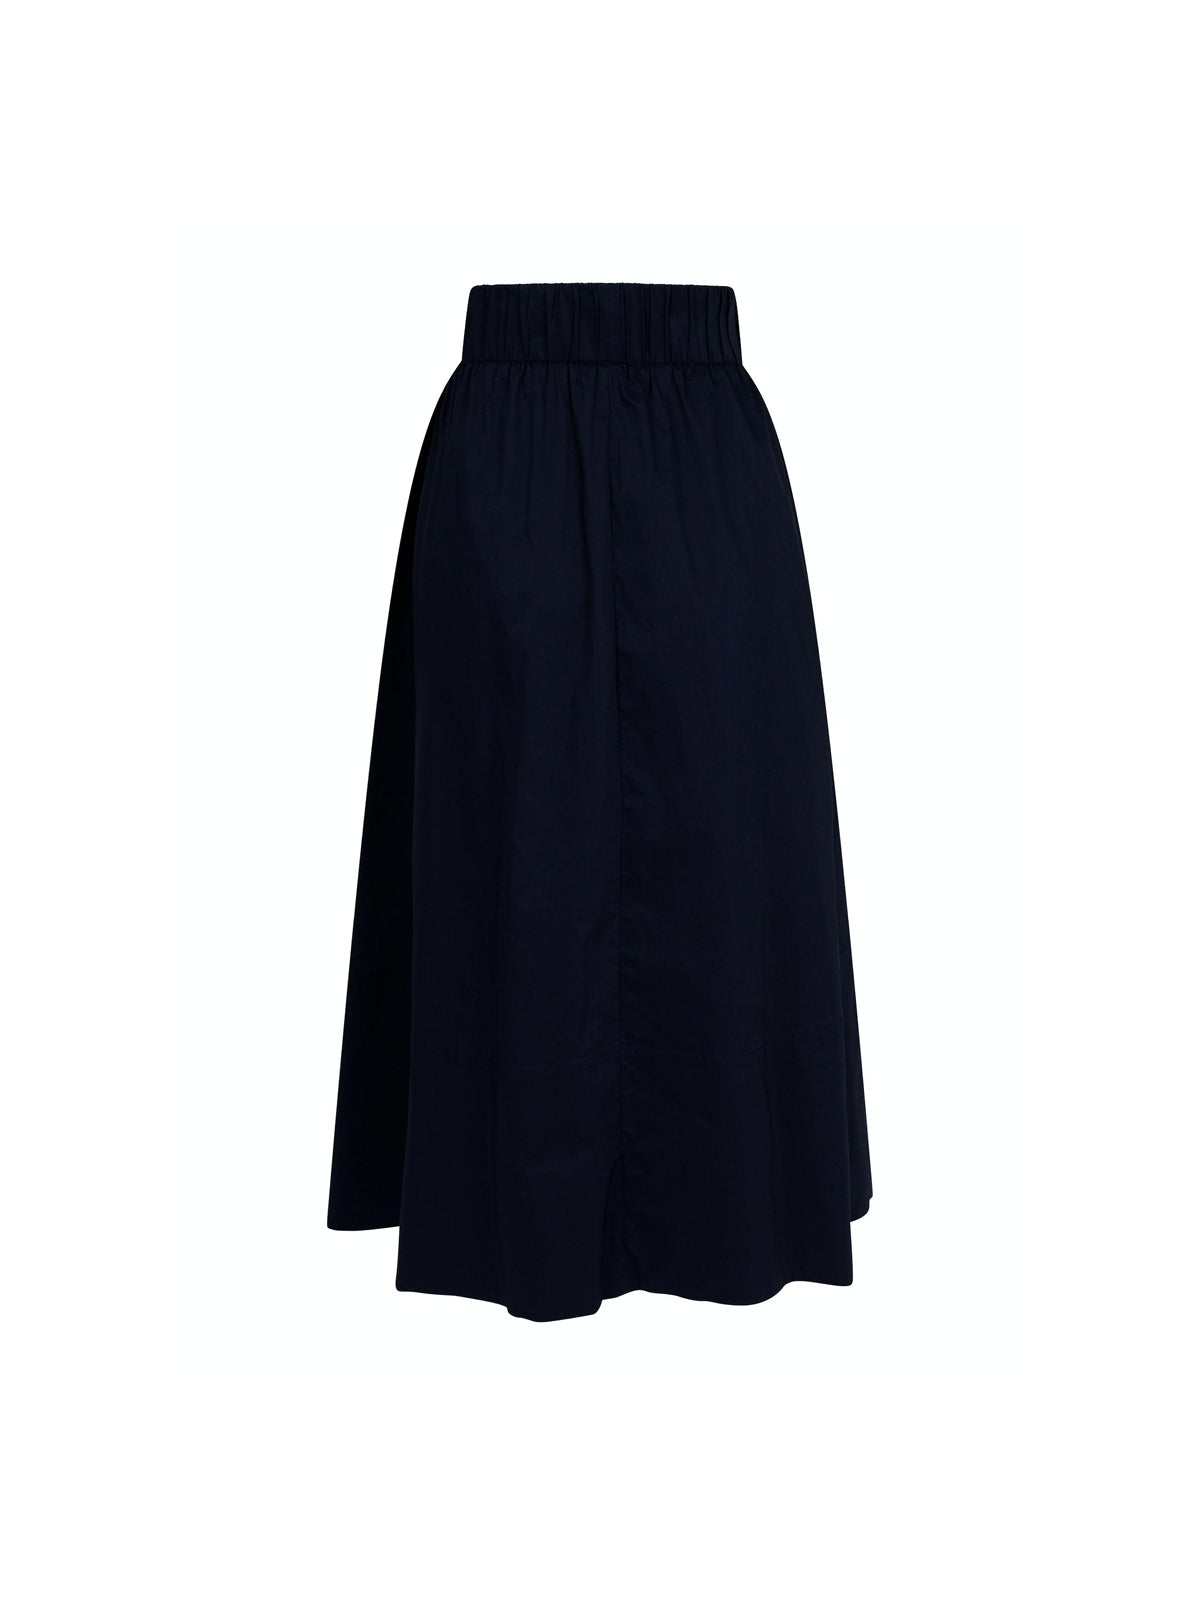 Yara Poplin Skirt